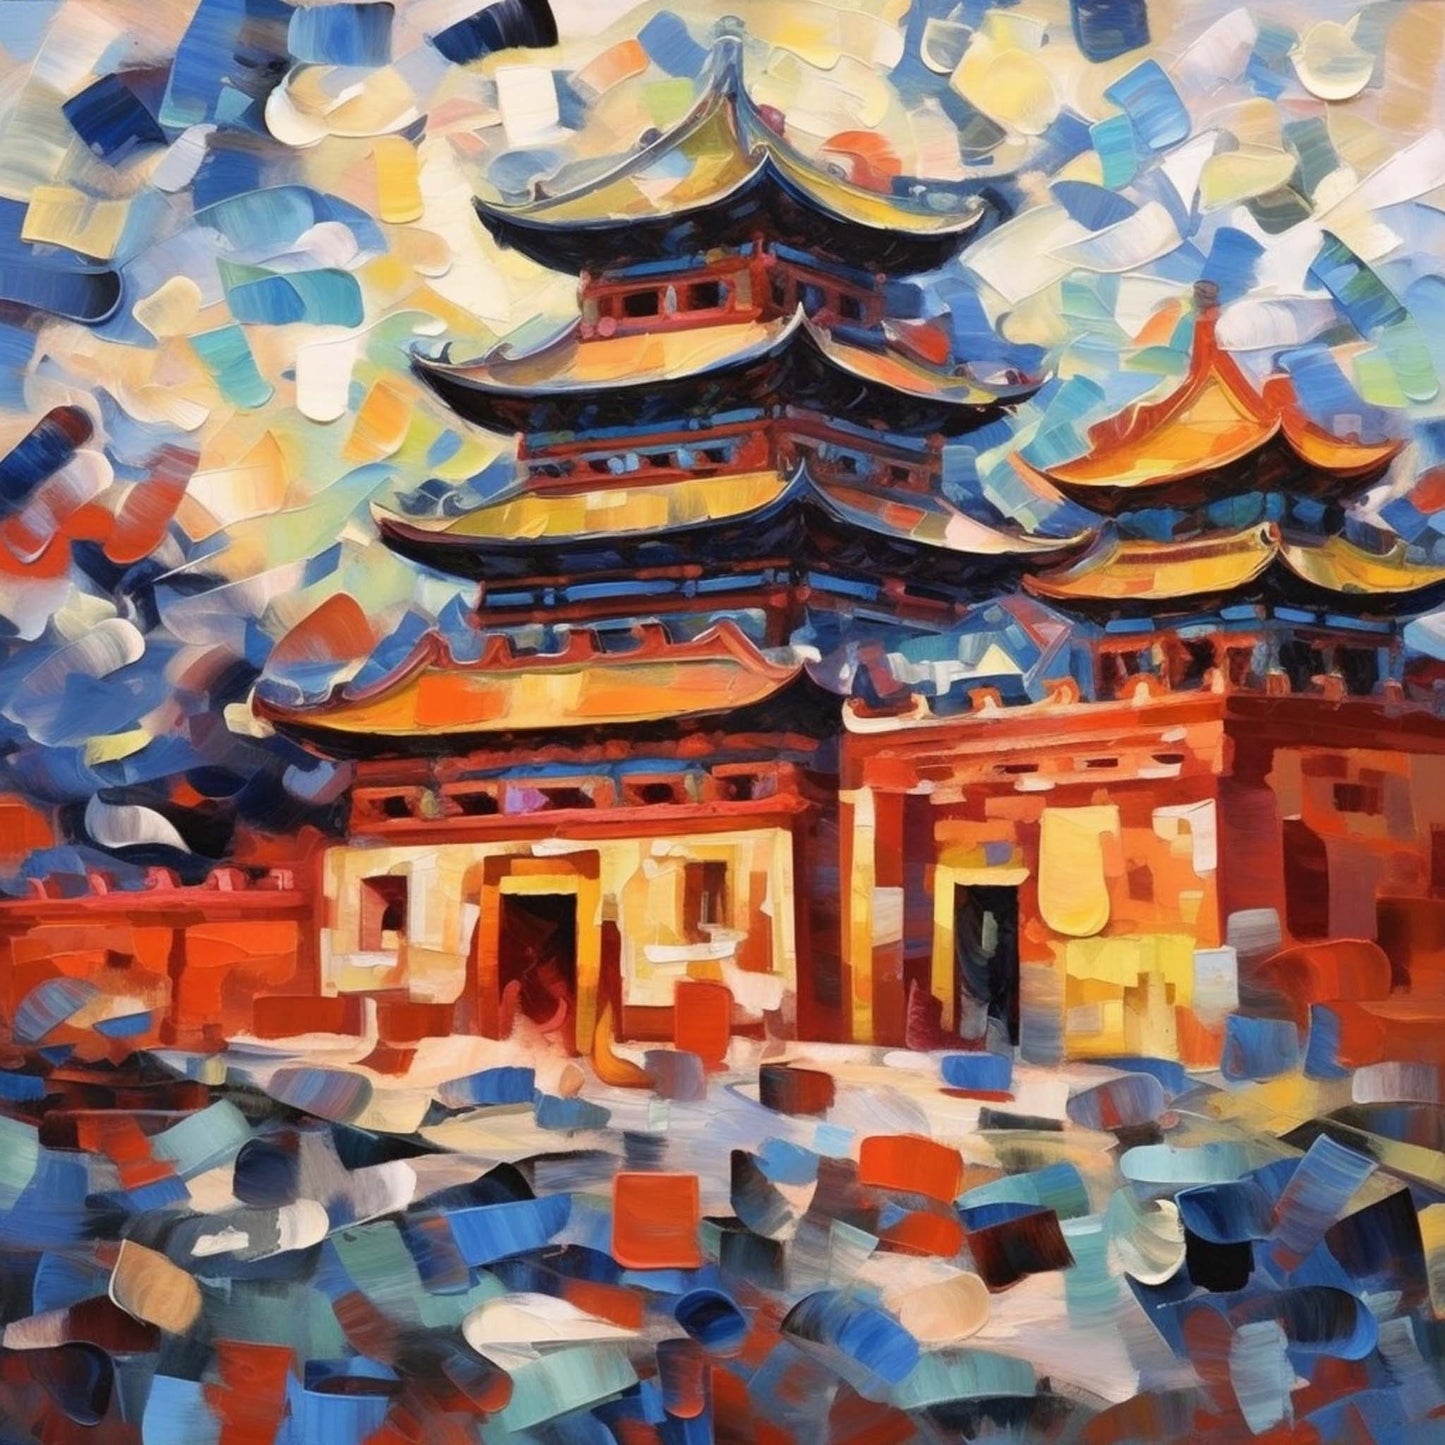 Peking Verbotene Stadt - Wandbild in der Stilrichtung des Expressionismus